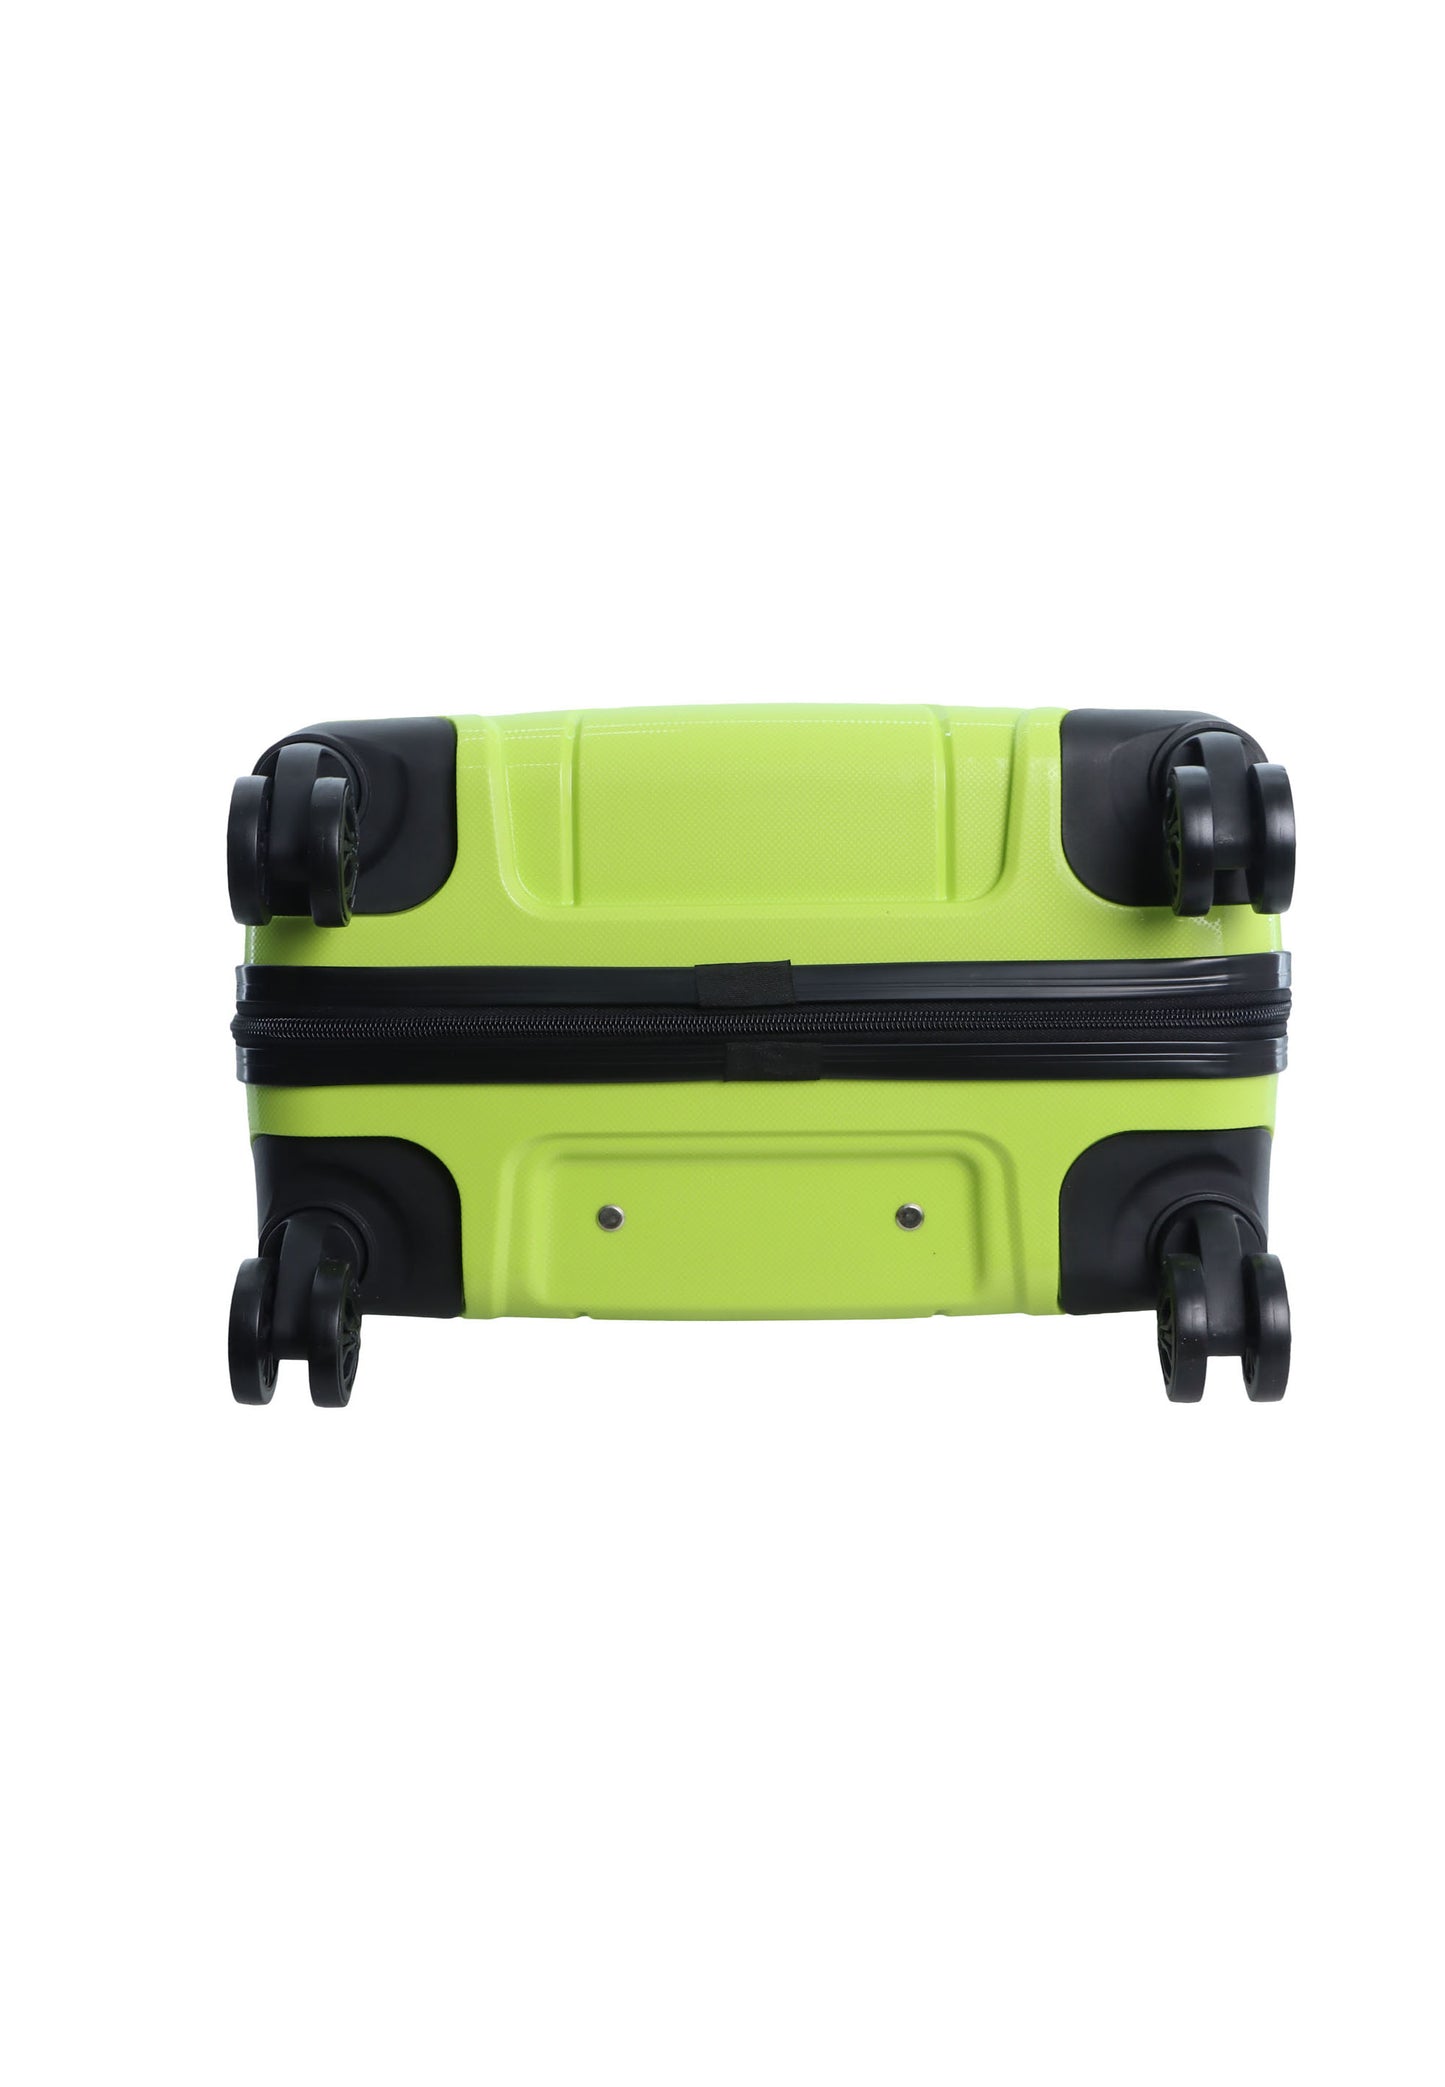 Discovery Skyward Bagage à main Valise rigide / Trolley / Valise de voyage - 55 cm (Petit) - Citron vert